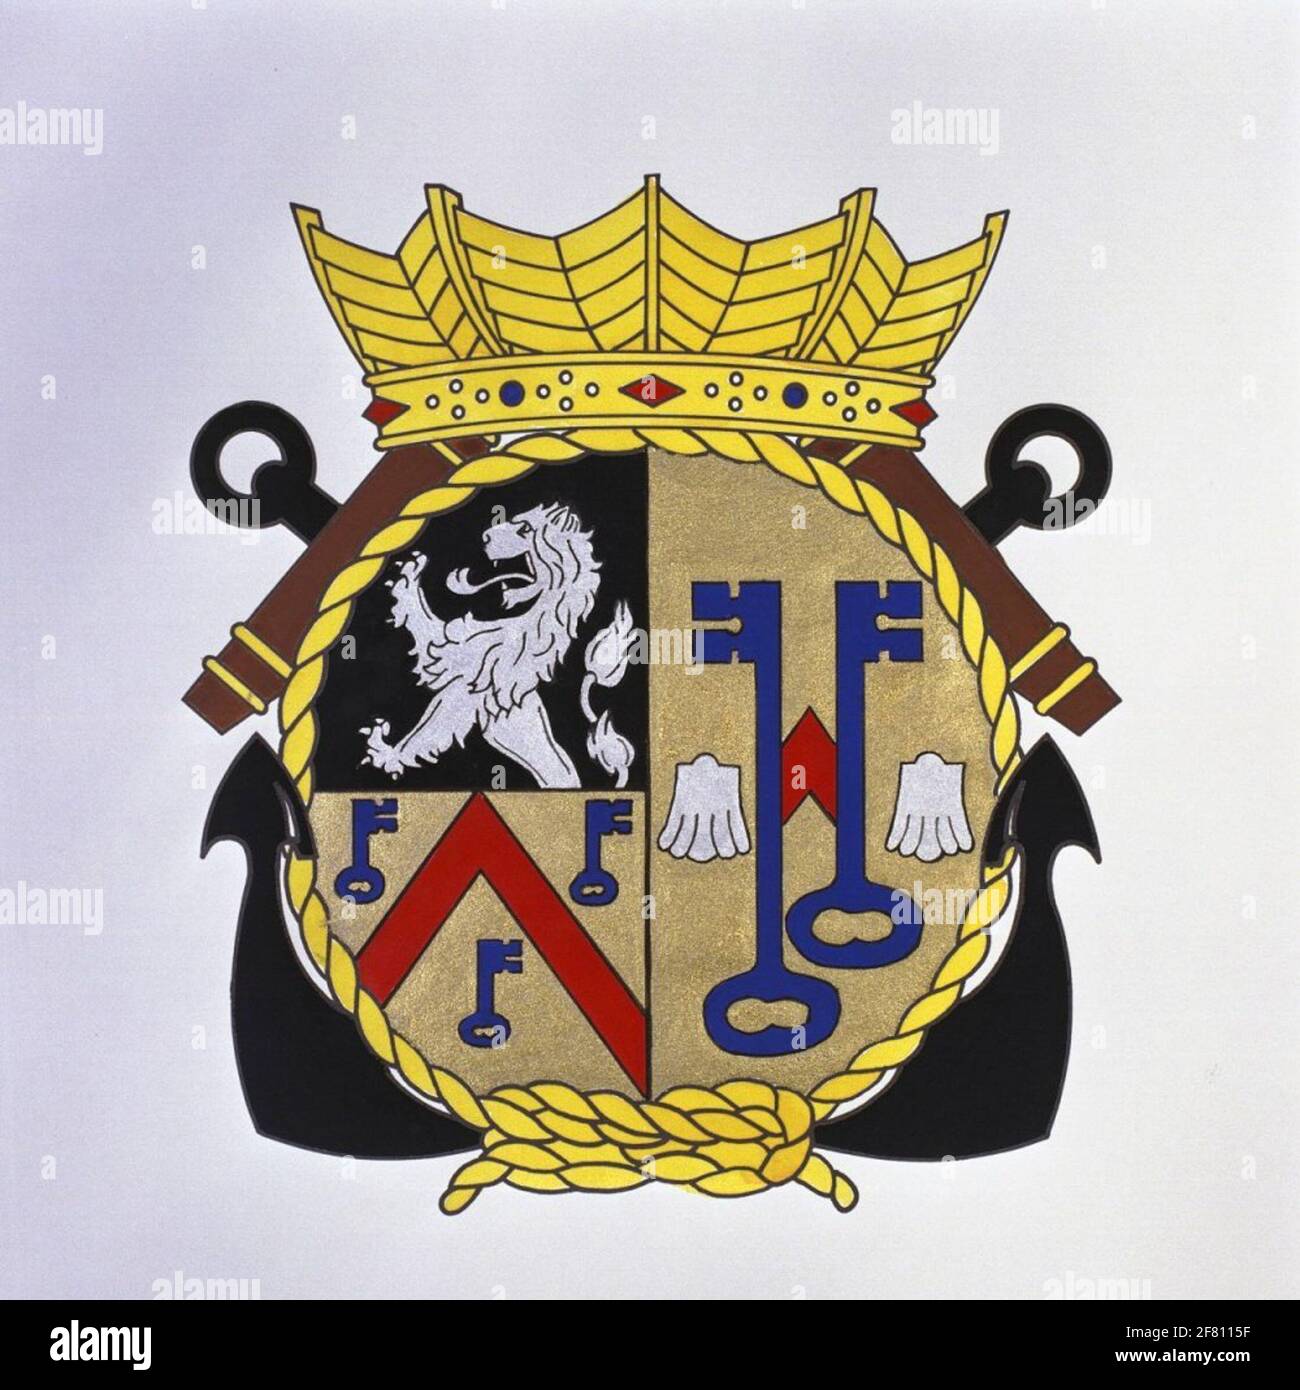 Axe L'emblème est dérivé de l'arme municipale d'Axel. Ci-dessous se réfère  au genre Giselle, une famille flamande influente, se référant  éventuellement aux armoiries du Sint-Pietersabdij à Gand dont l'abbaye dans  l'arme a